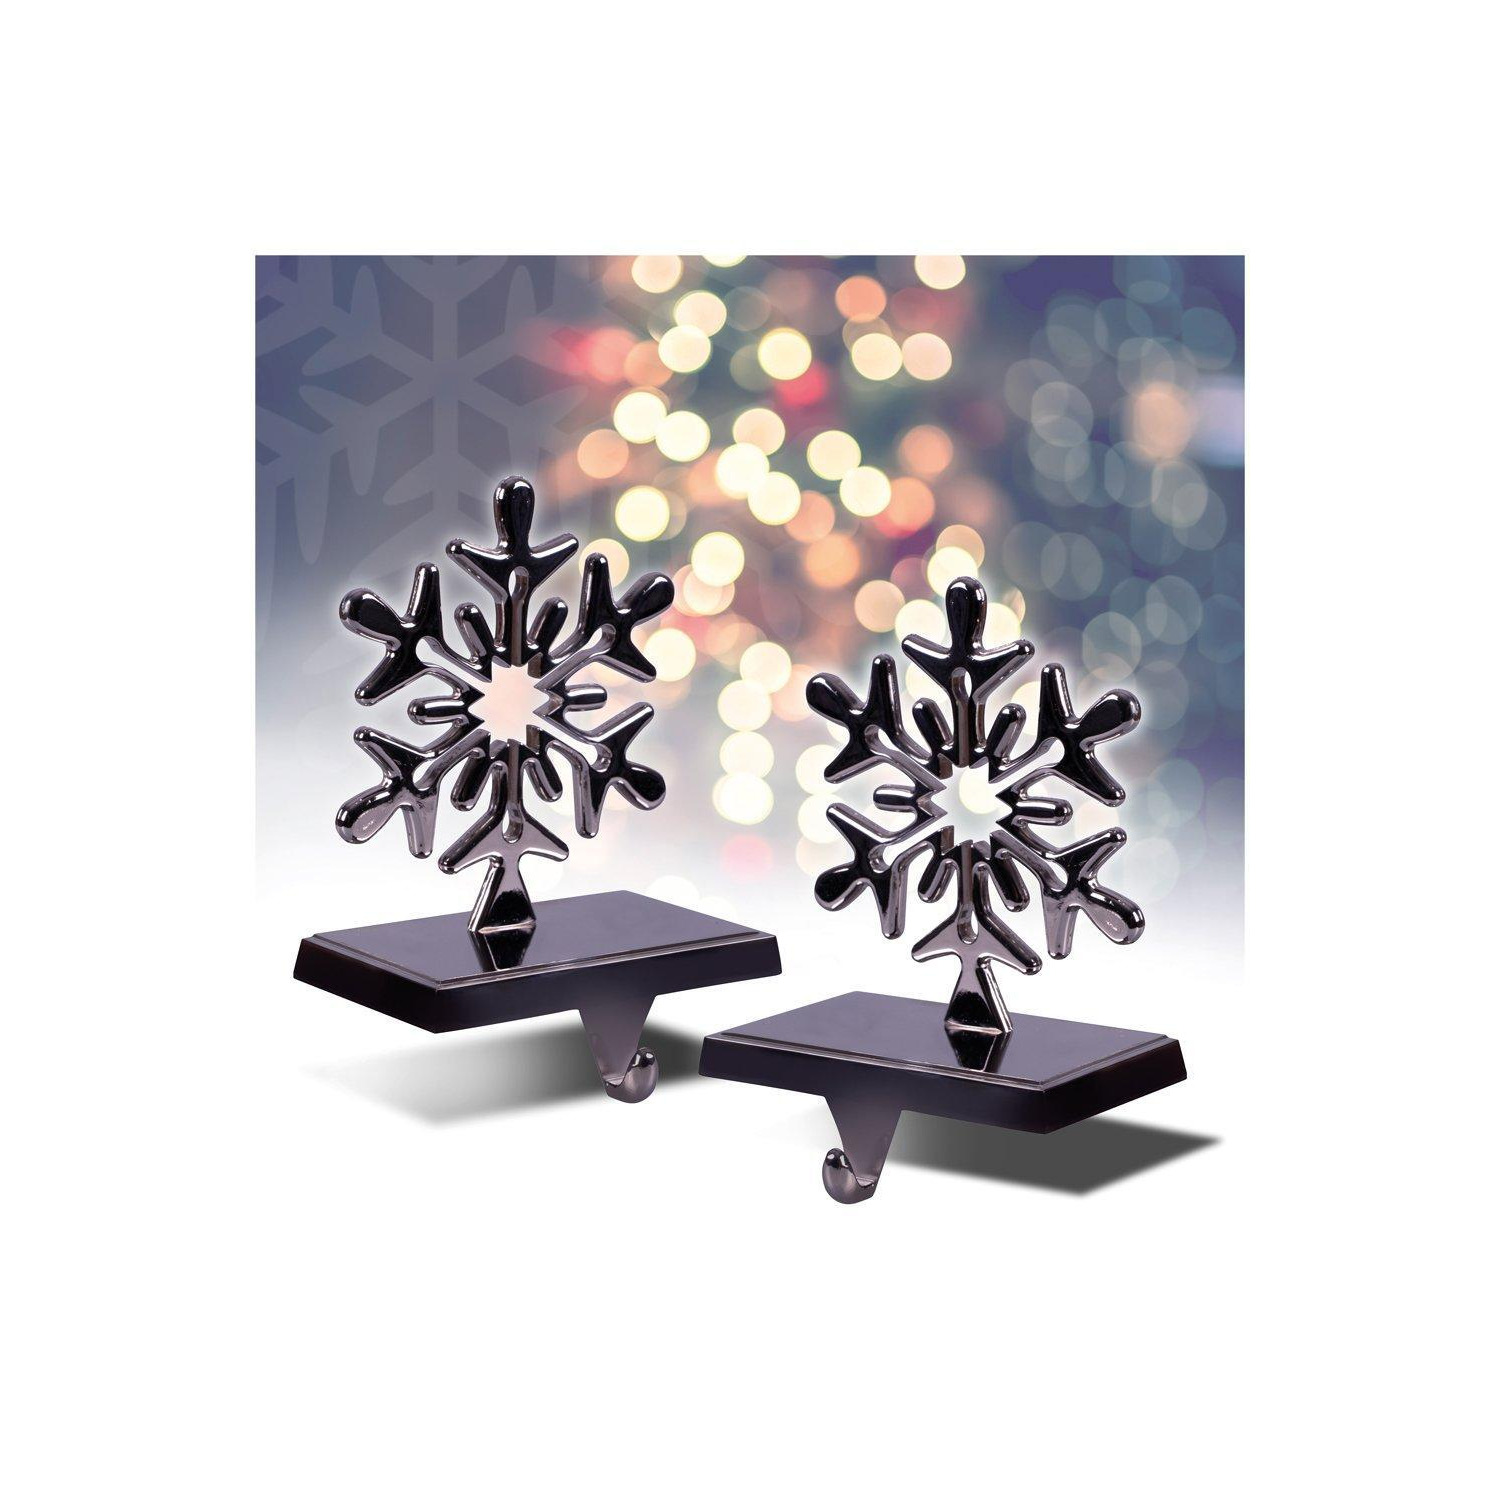 Set of 2 Christmas Stocking Holders - image 1